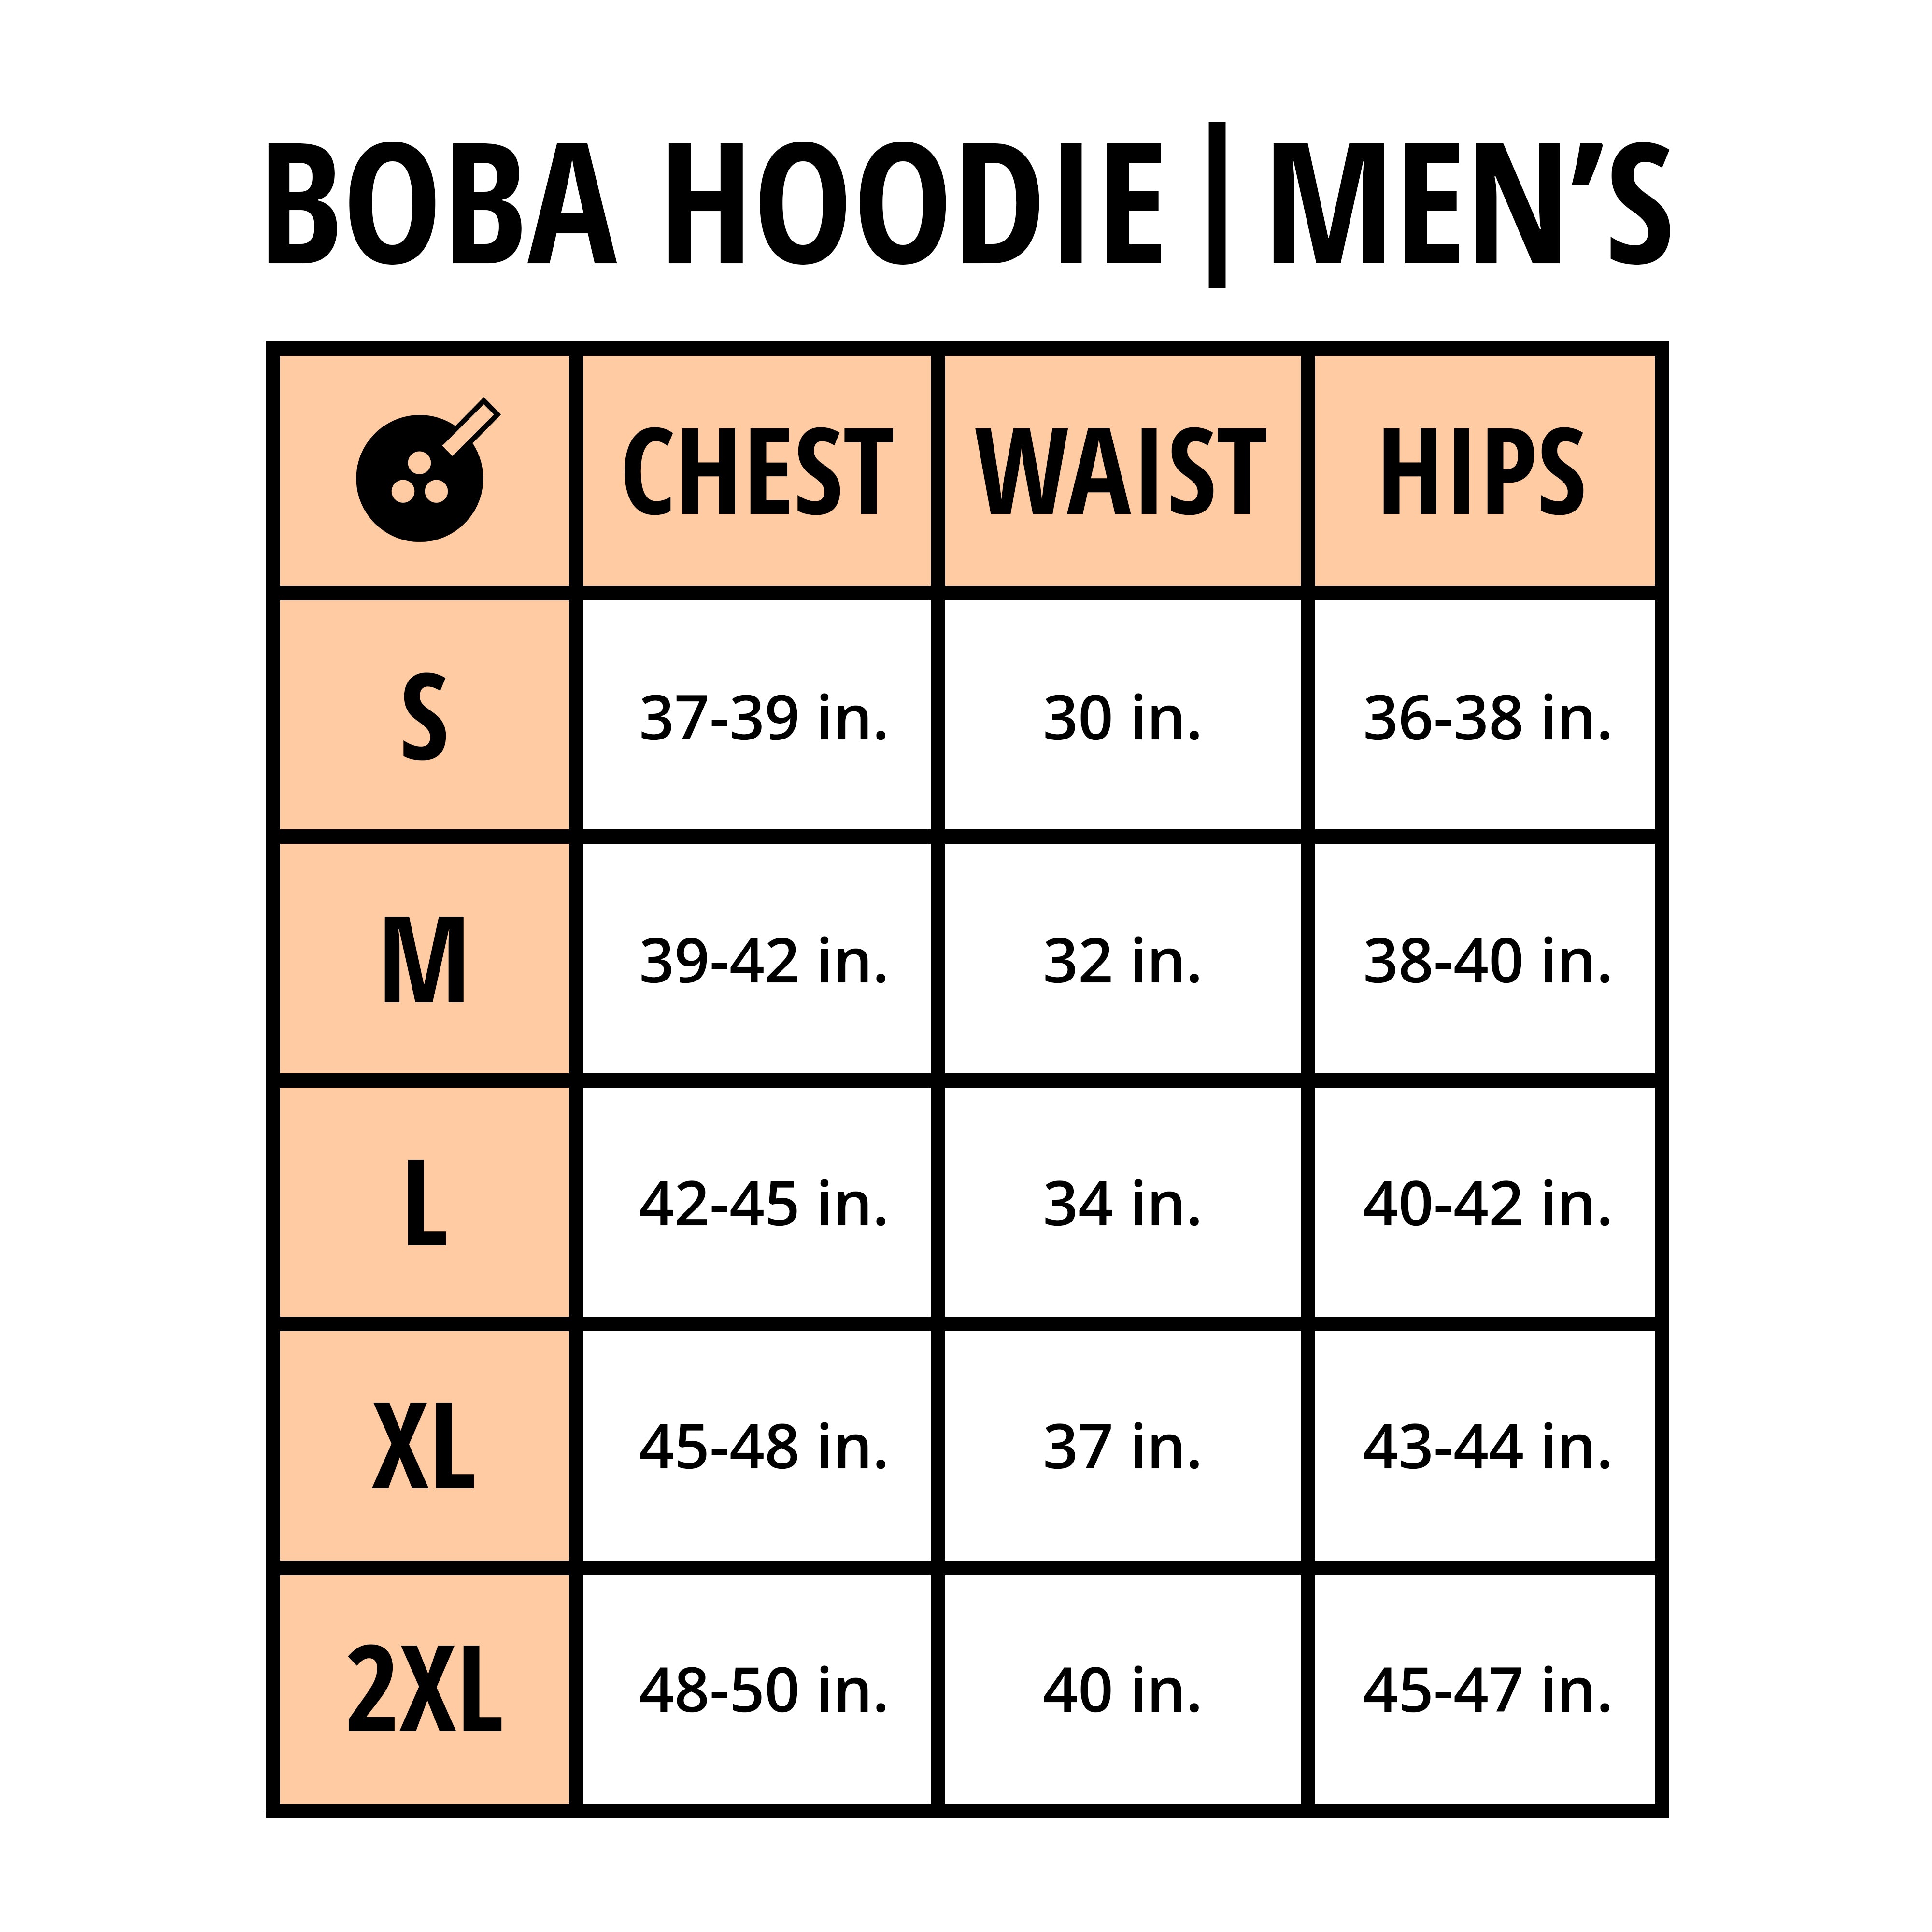 Boba Hoodie | Men's